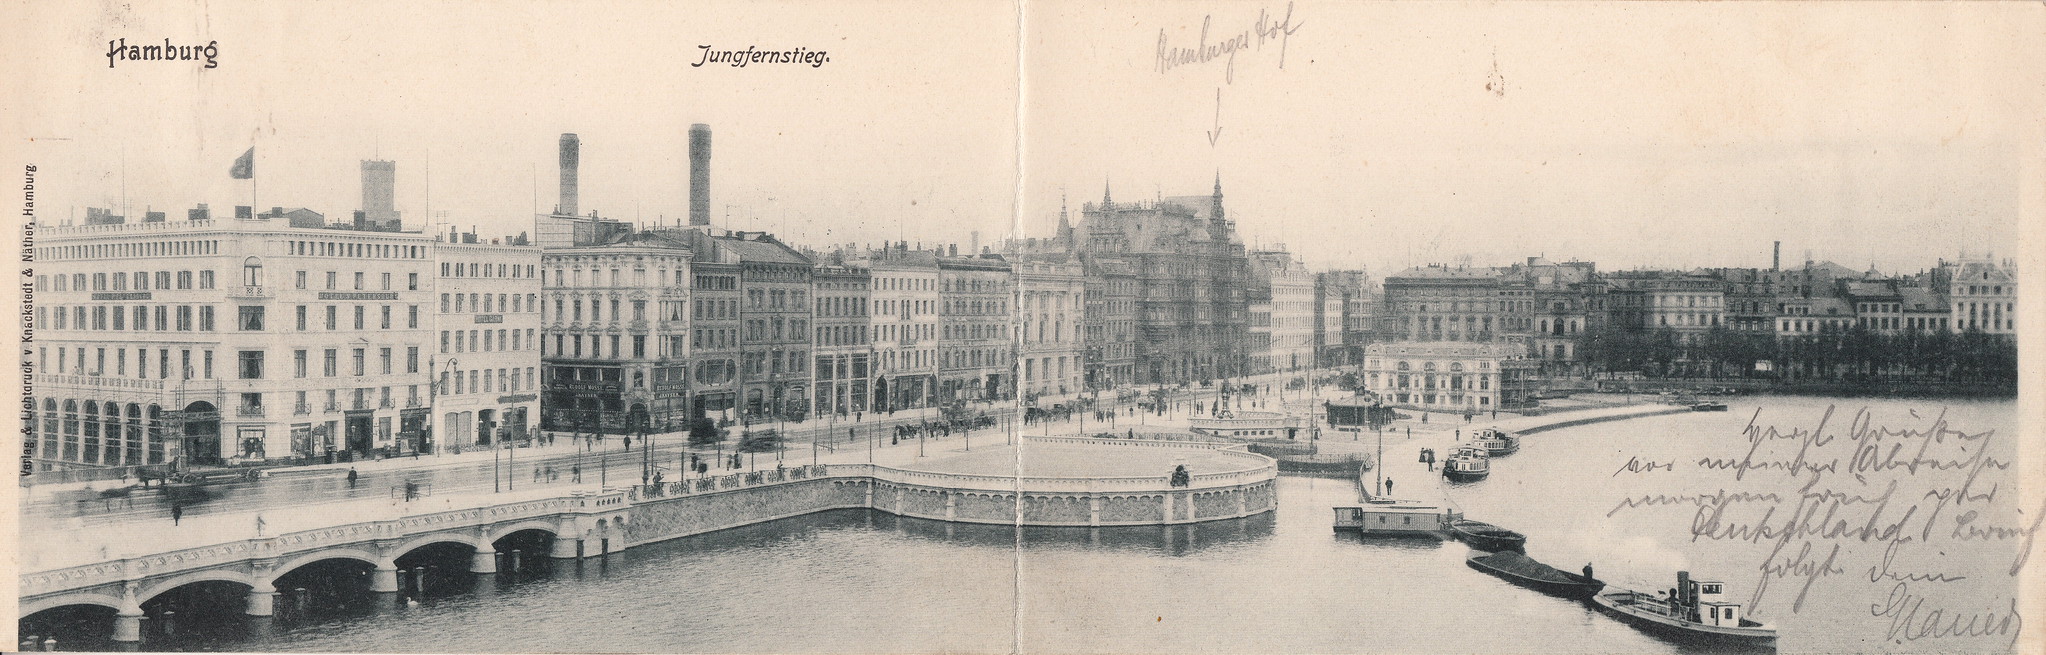 Straatnamen in Hamburg | Ansichtkaart Jungfernstieg